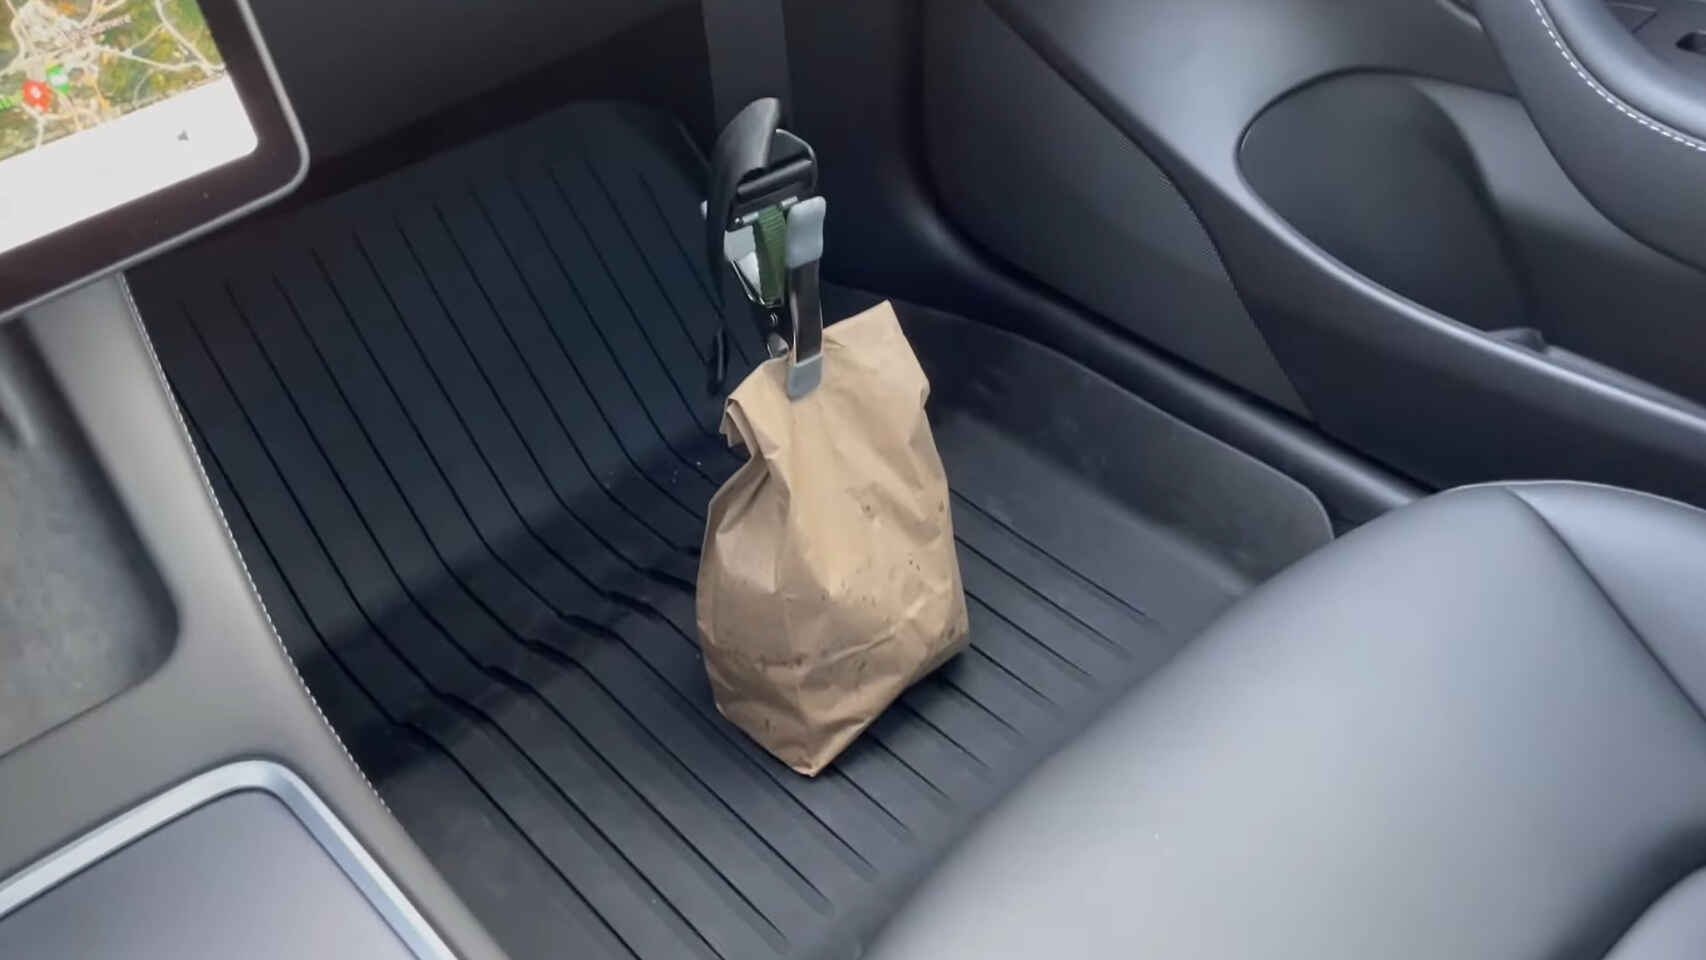 Inventen un cinturó de seguretat perquè les bosses de la compra no es bolquin al cotxe